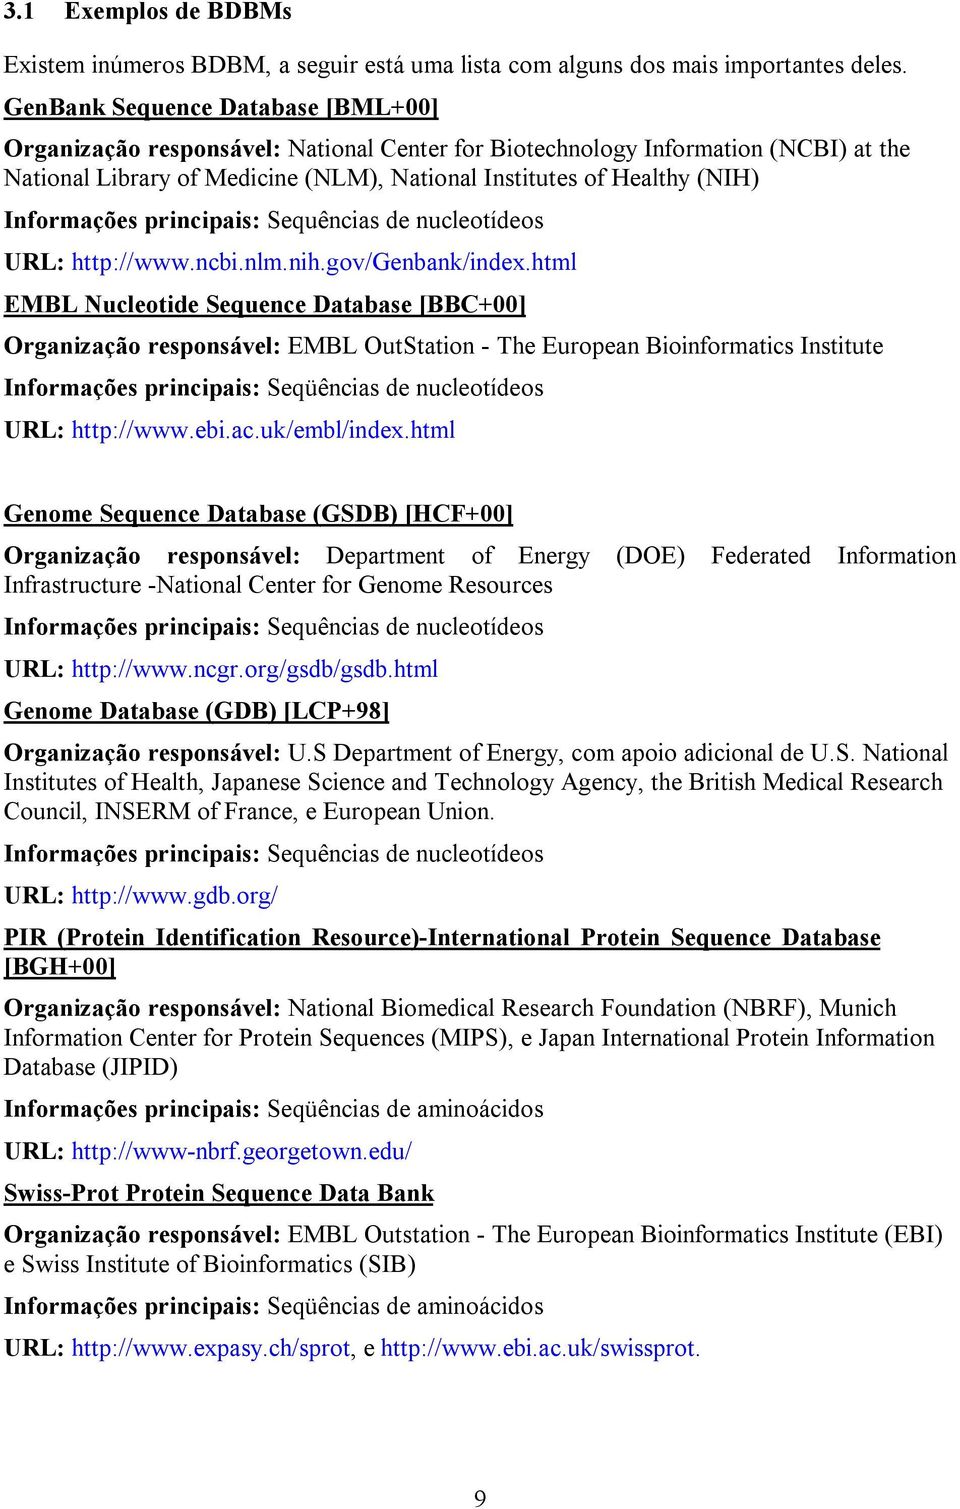 Informações principais: Sequências de nucleotídeos URL: http://www.ncbi.nlm.nih.gov/genbank/index.